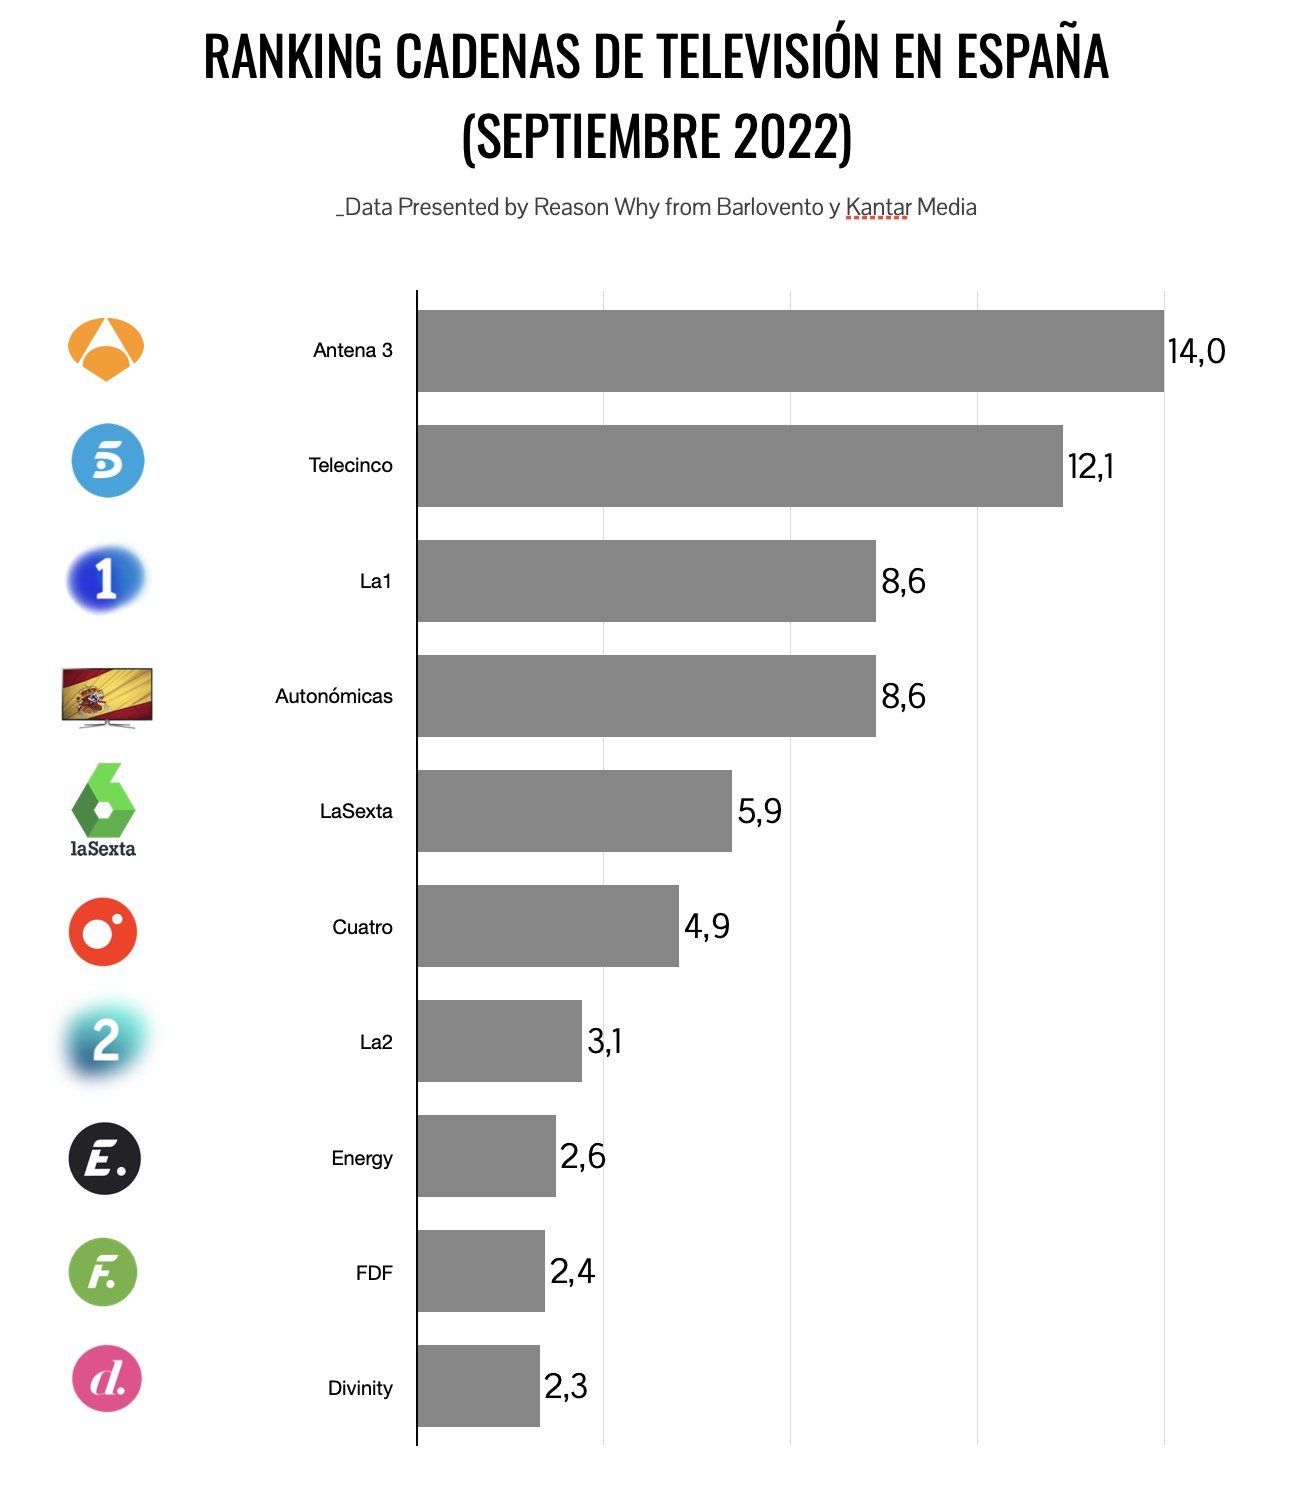 Ranking de cadenas de televisión por audiencias, septiembre 2022